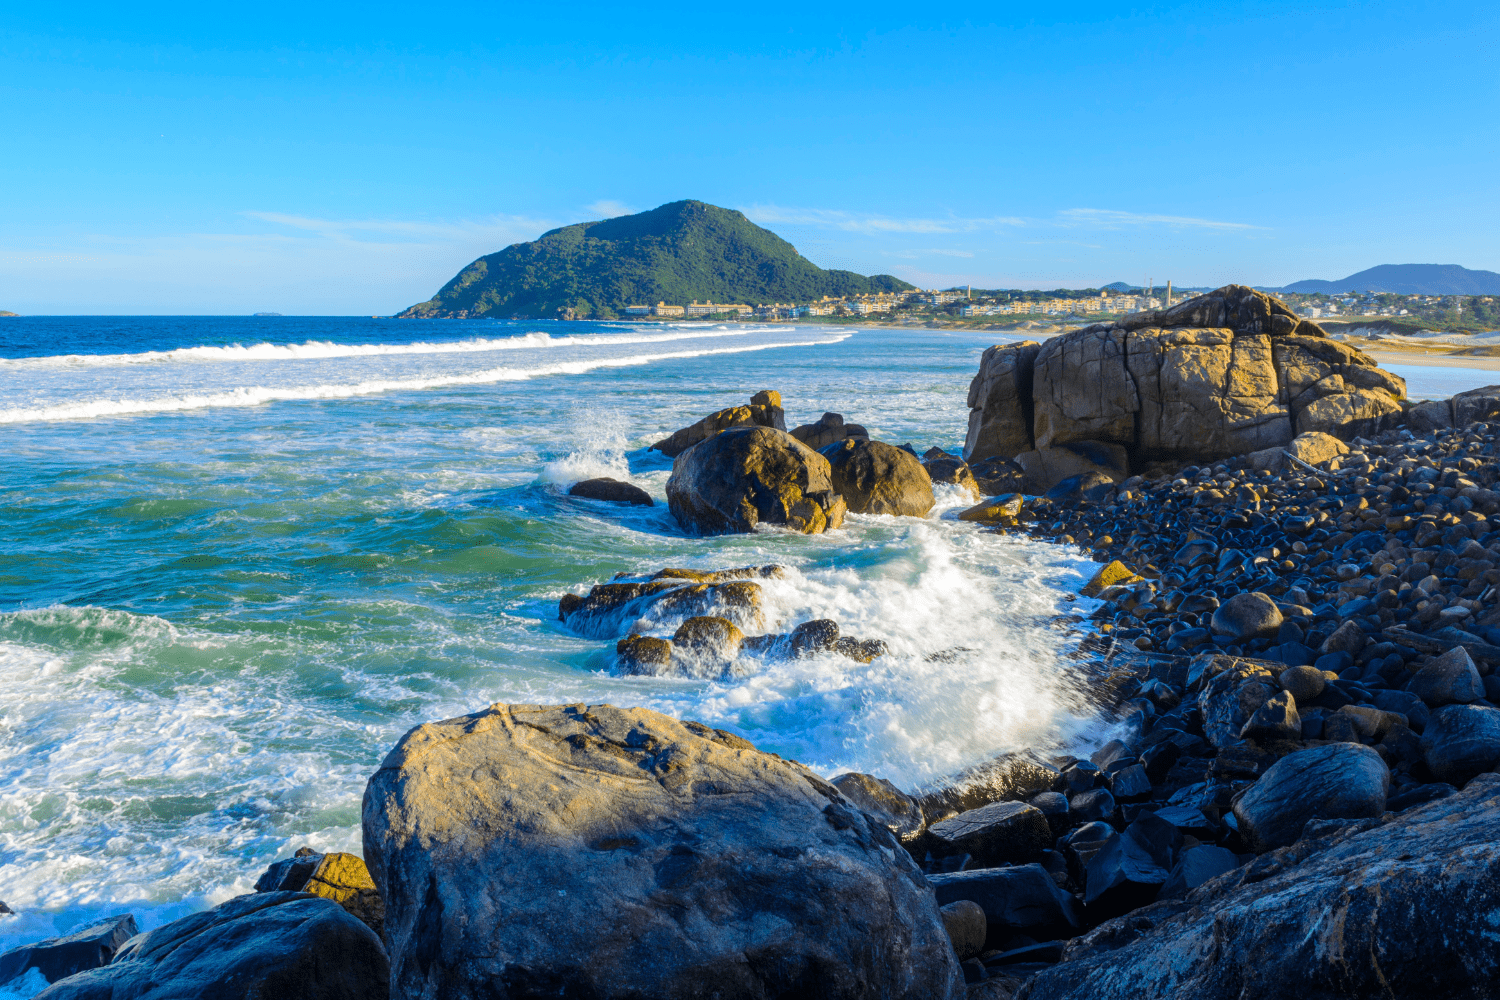 Praia do Santinho - Florianópolis Guia completo